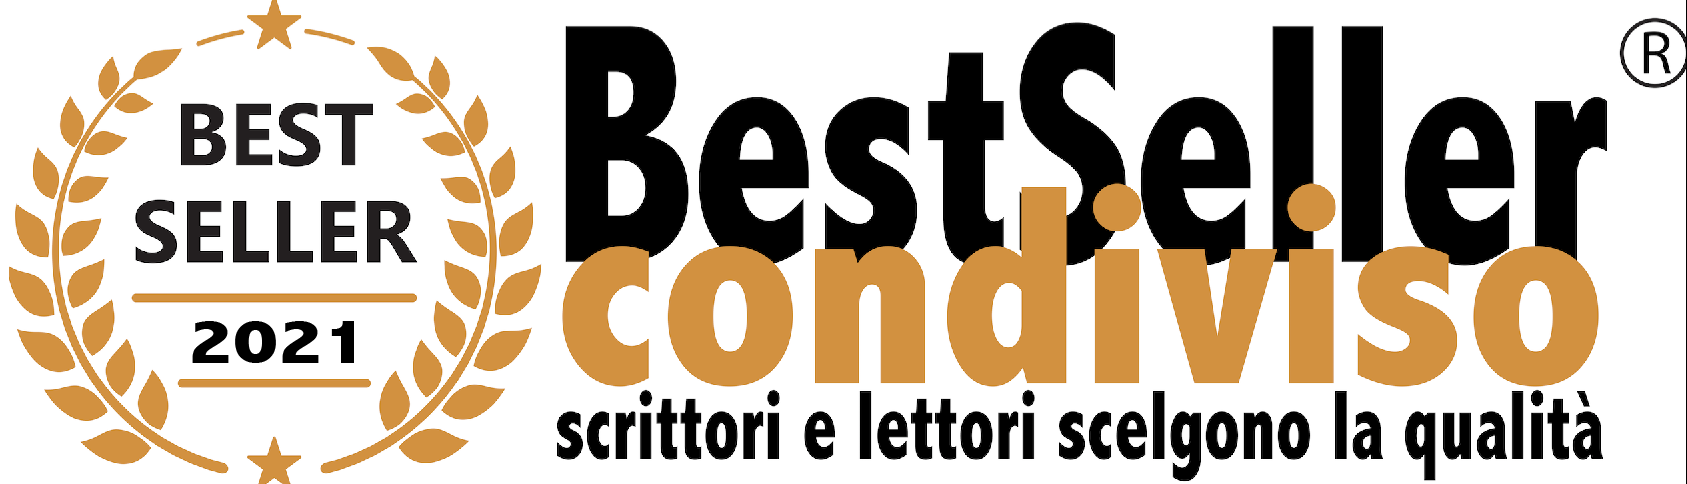 Contest BestSellerCondiviso – Narrativa Edita –Montepremi 10.000 € II Edizione 2021